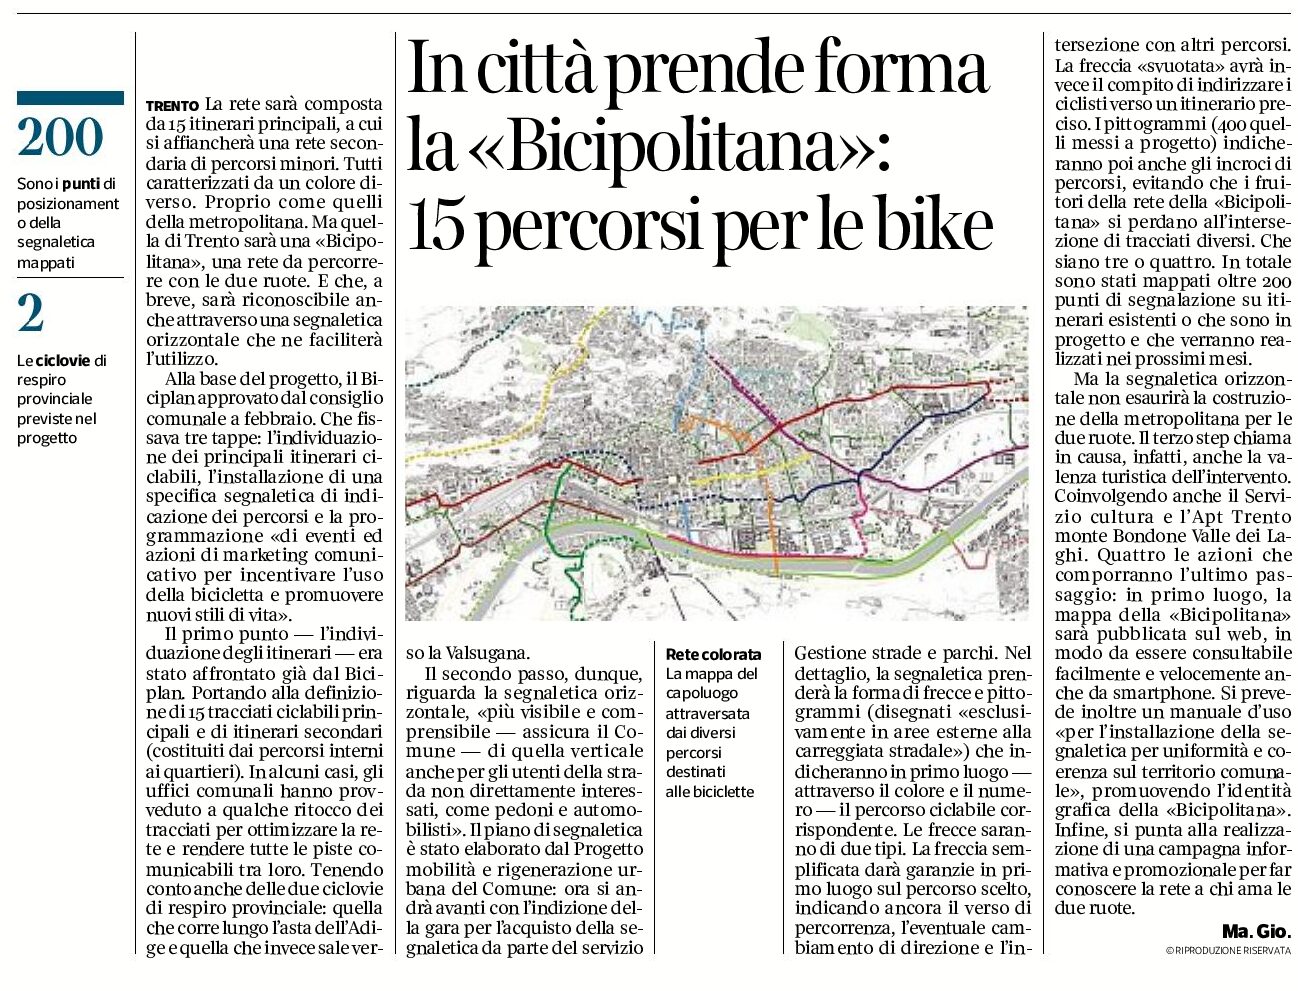 Trento: in città prende forma la “bicipolitana”: 15 percorsi per le bike